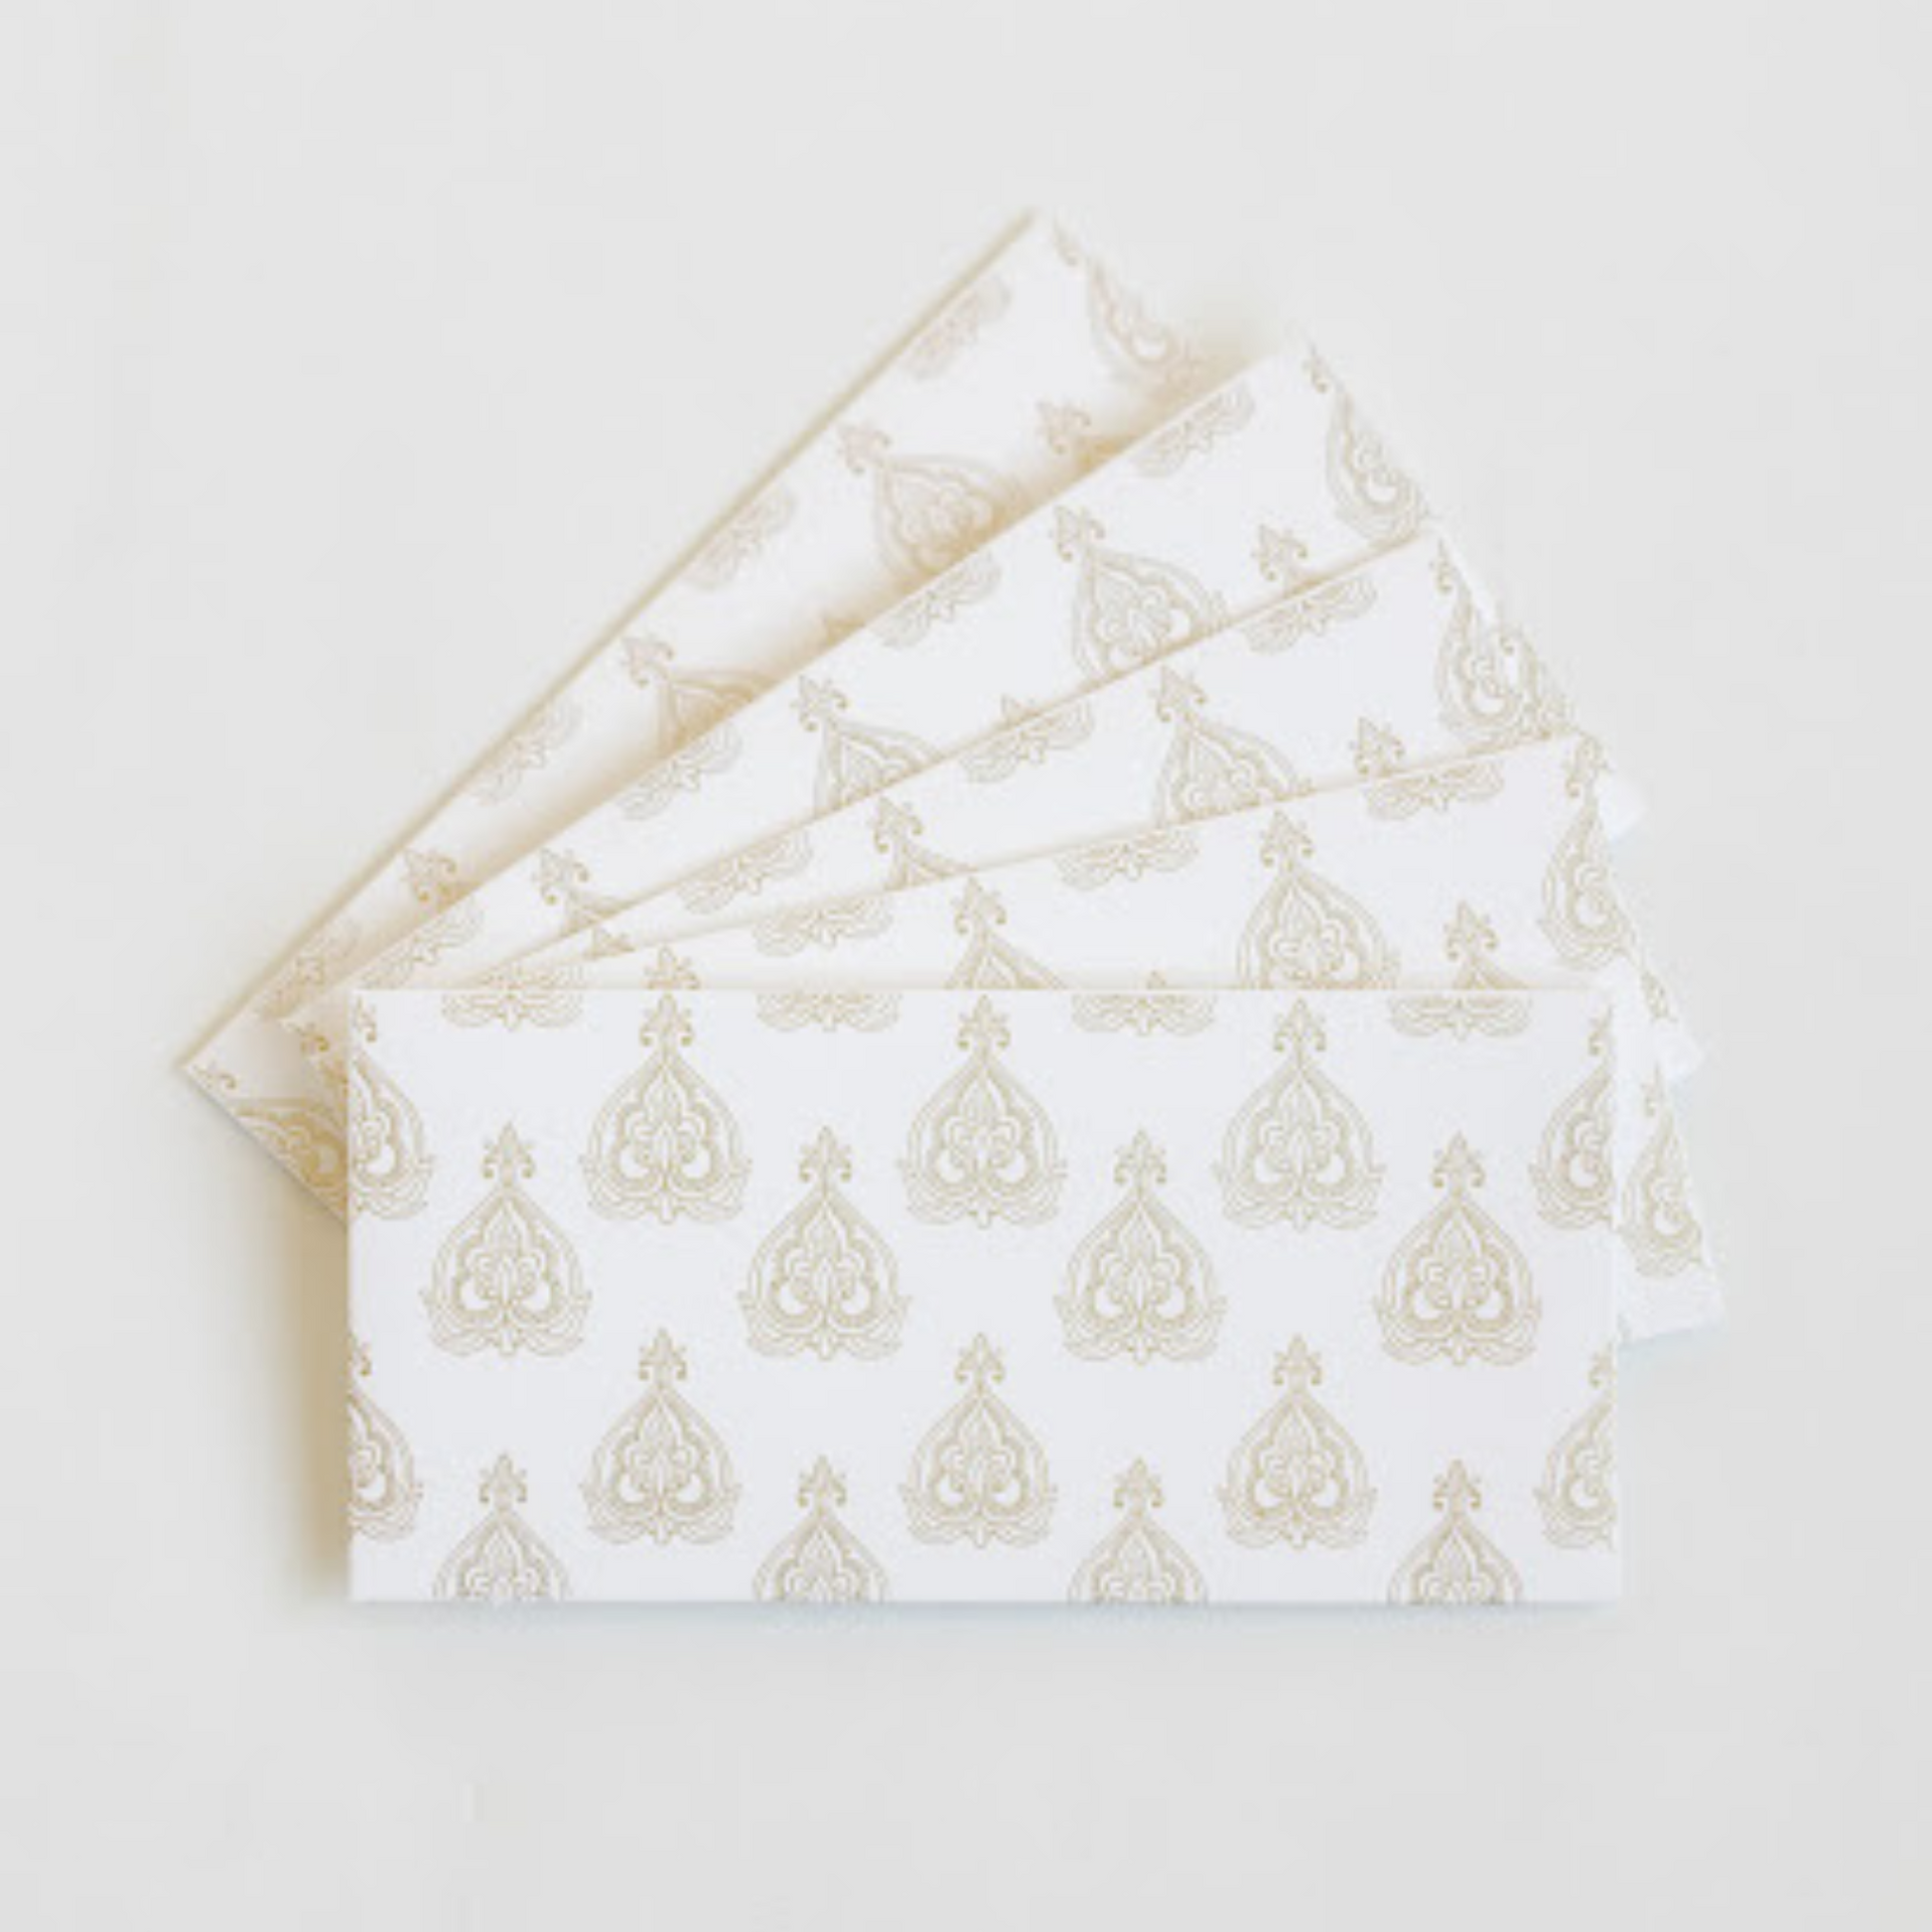 ivory gift money envelopes for shugun gifting from decorasian